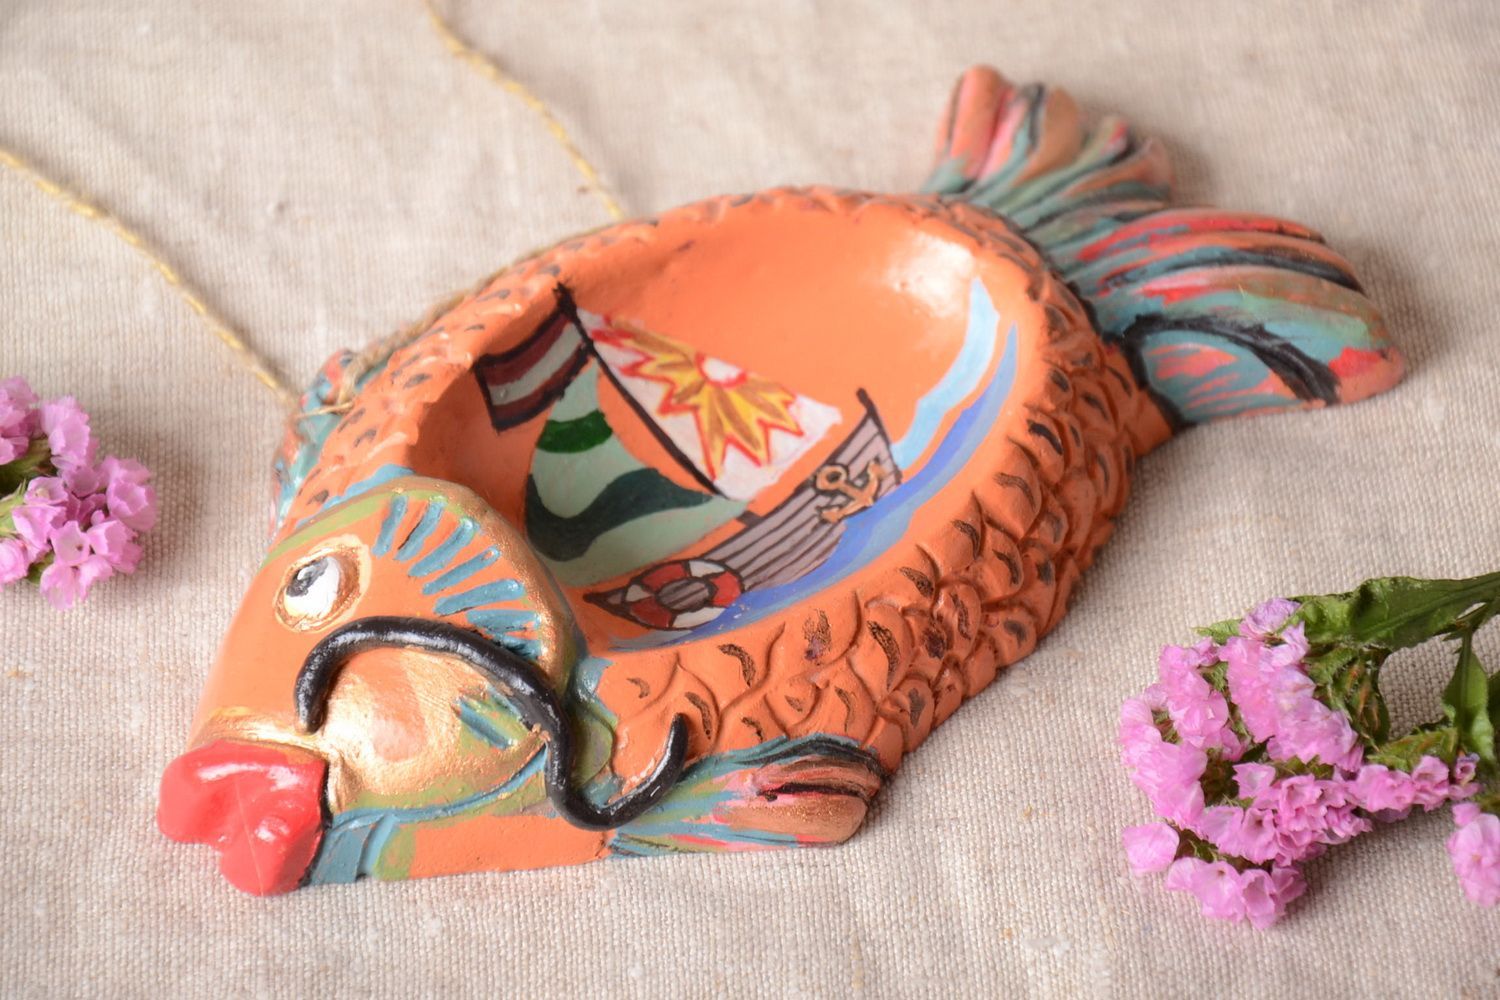 Unusual handmade ceramic ashtray decorative clay wall hanging gift ideas photo 1